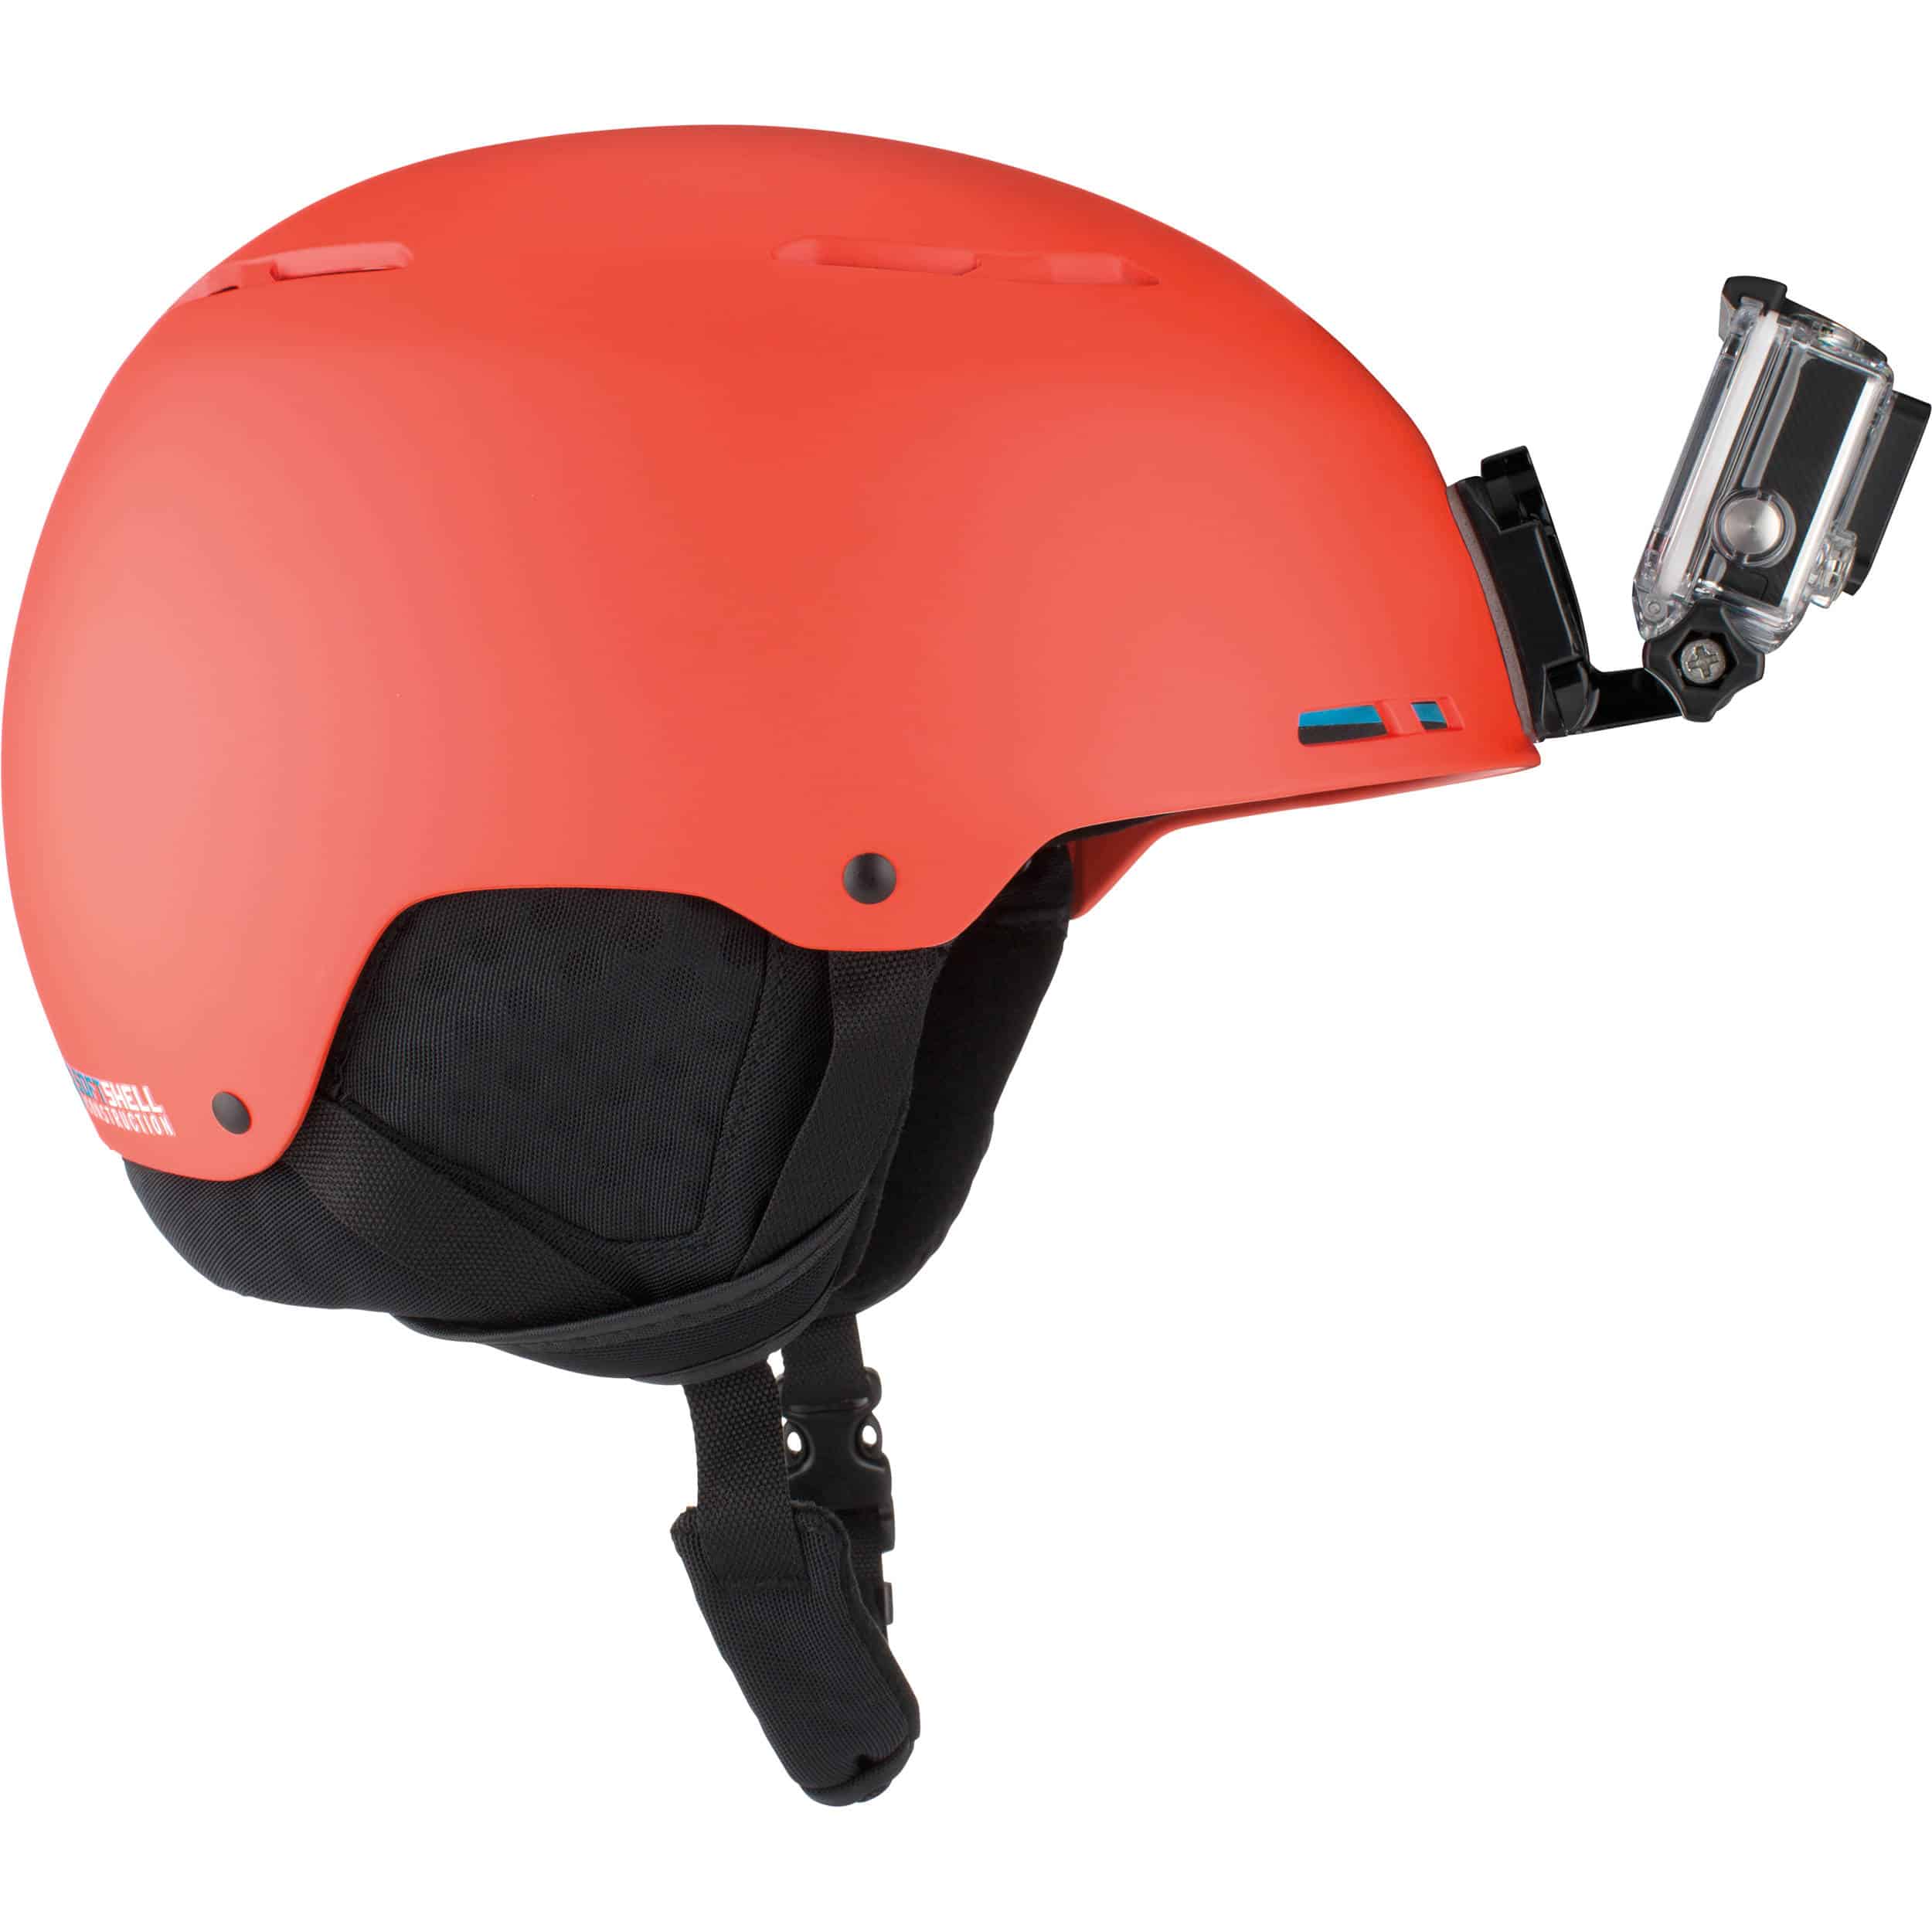 Купить камеру на шлем. GOPRO AHFSM-001. Гоупро на шлем. Крепления на шлем GOPRO Helmet Front + Side Mount. Шлем горнолыжный XS GOPRO.